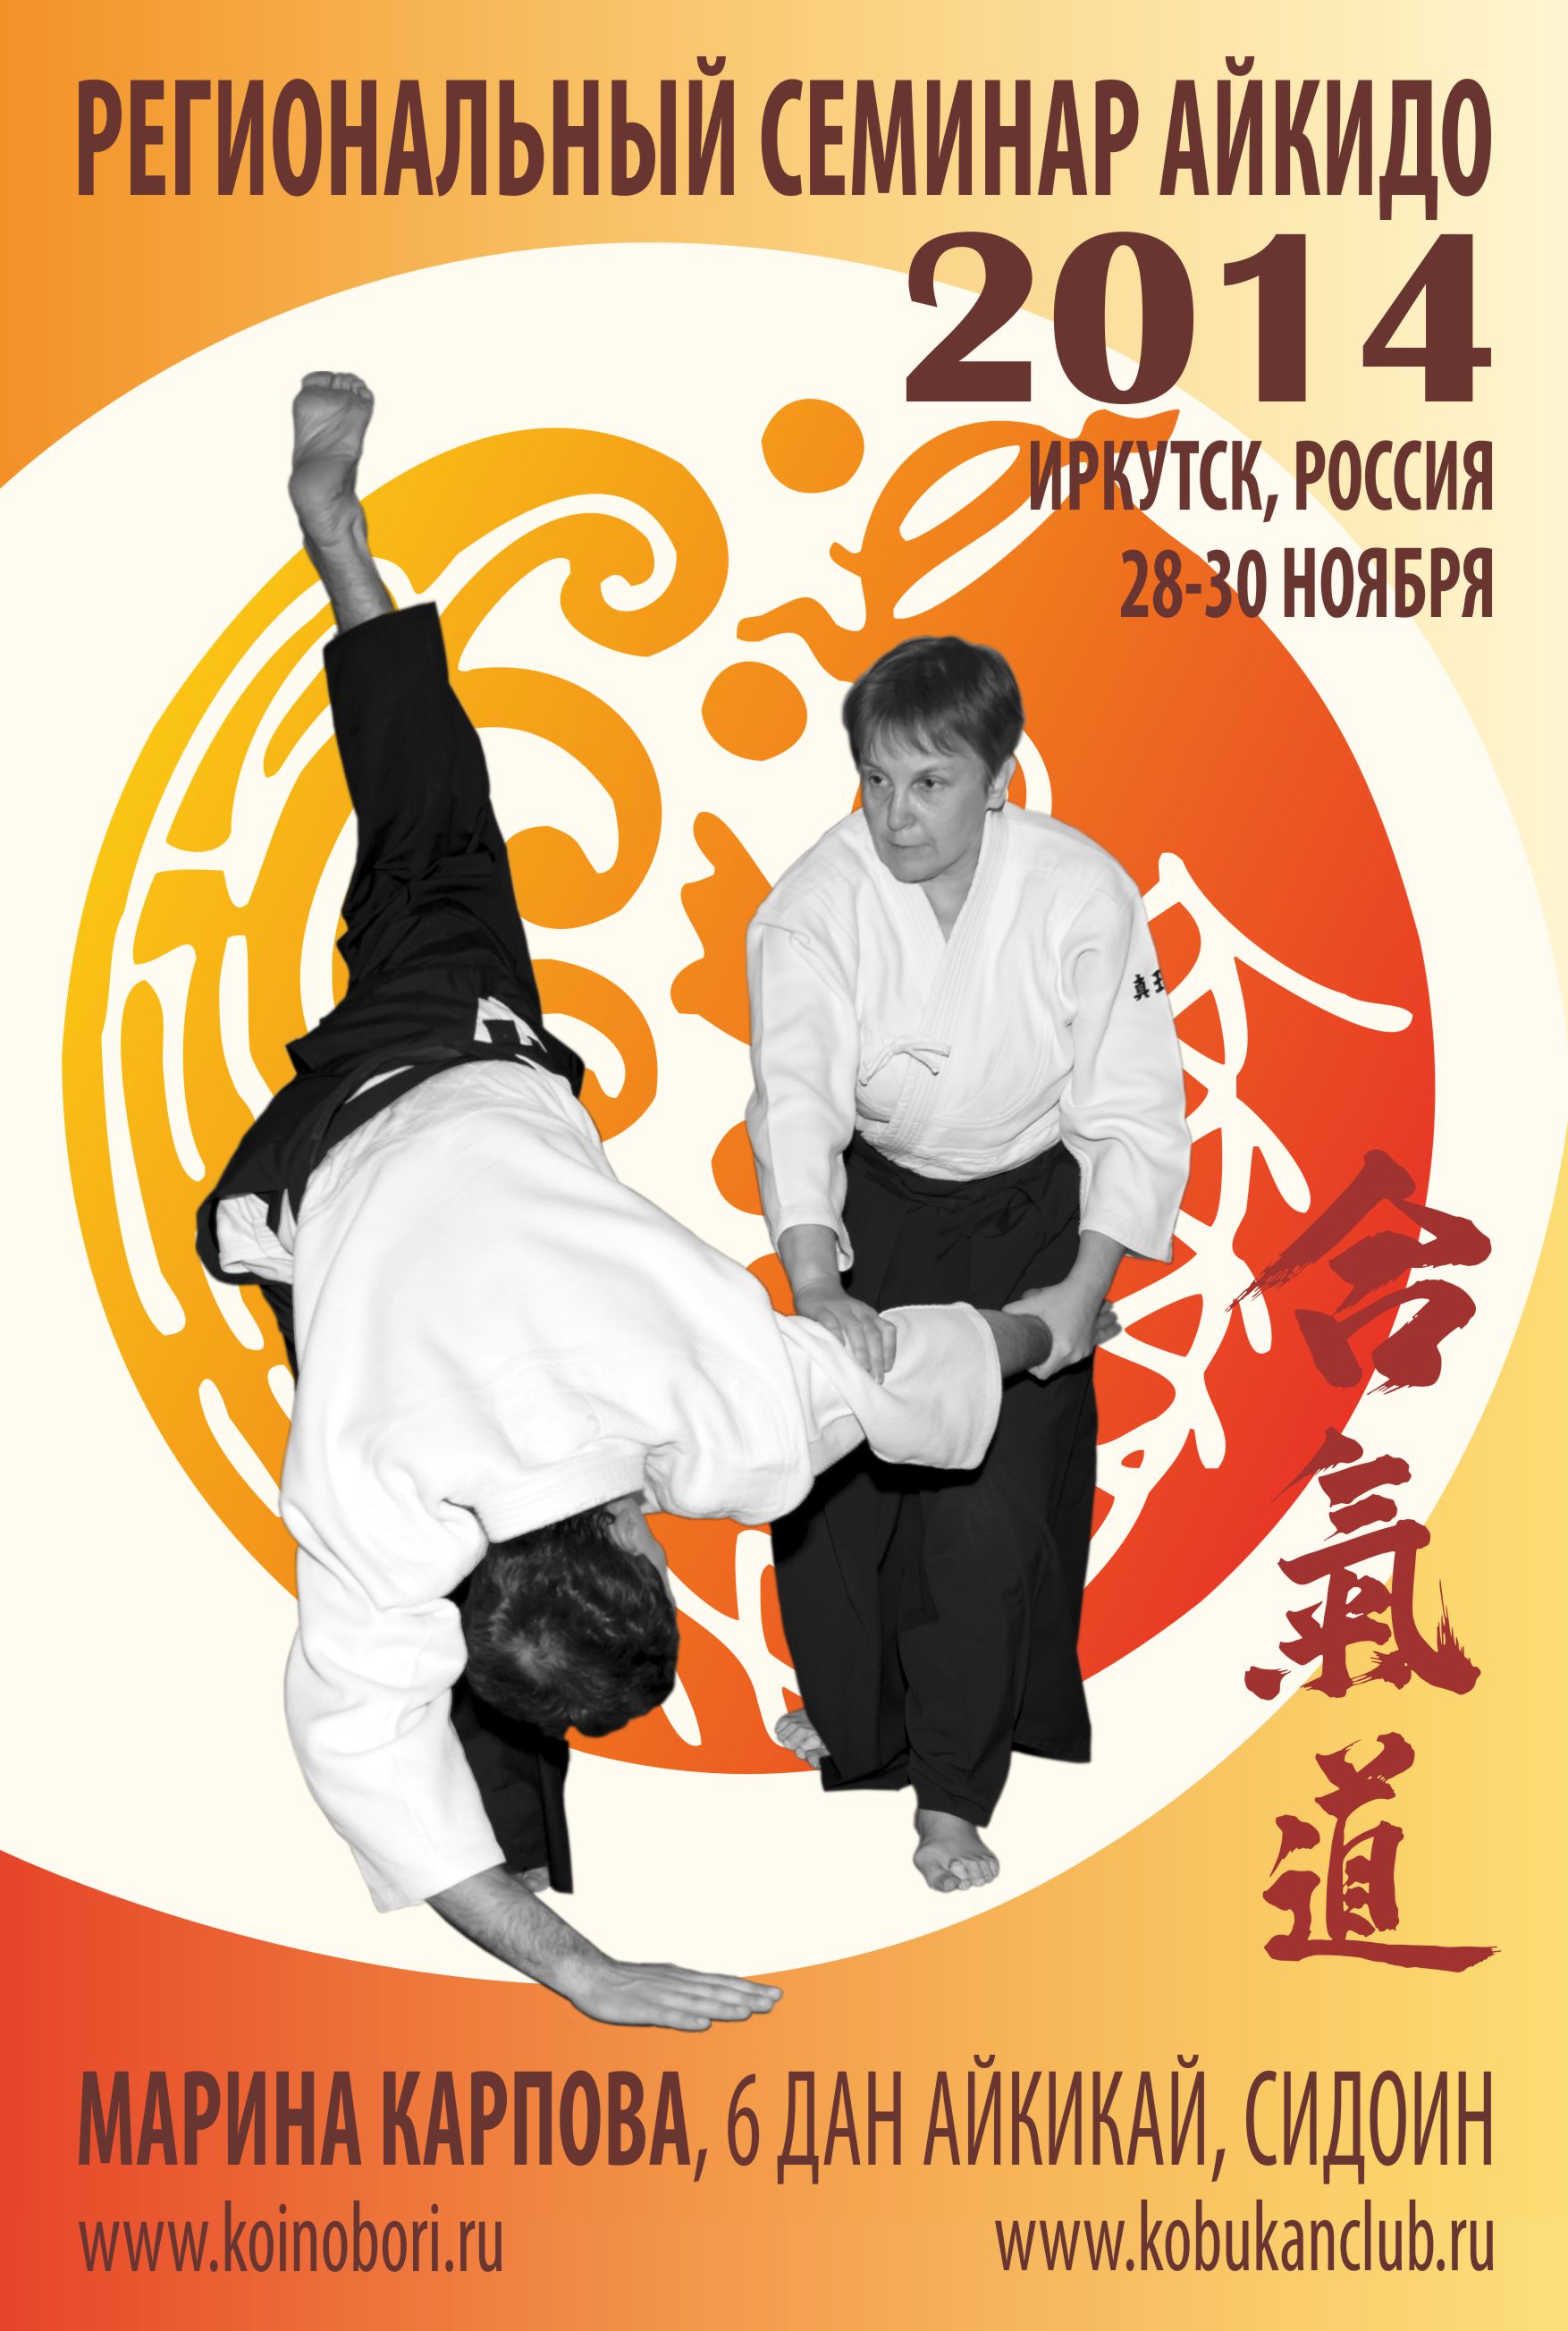 Плакат регионального семинара по айкидо АЙКИКАЙ в Иркутске под руководством М.Л.Карповой